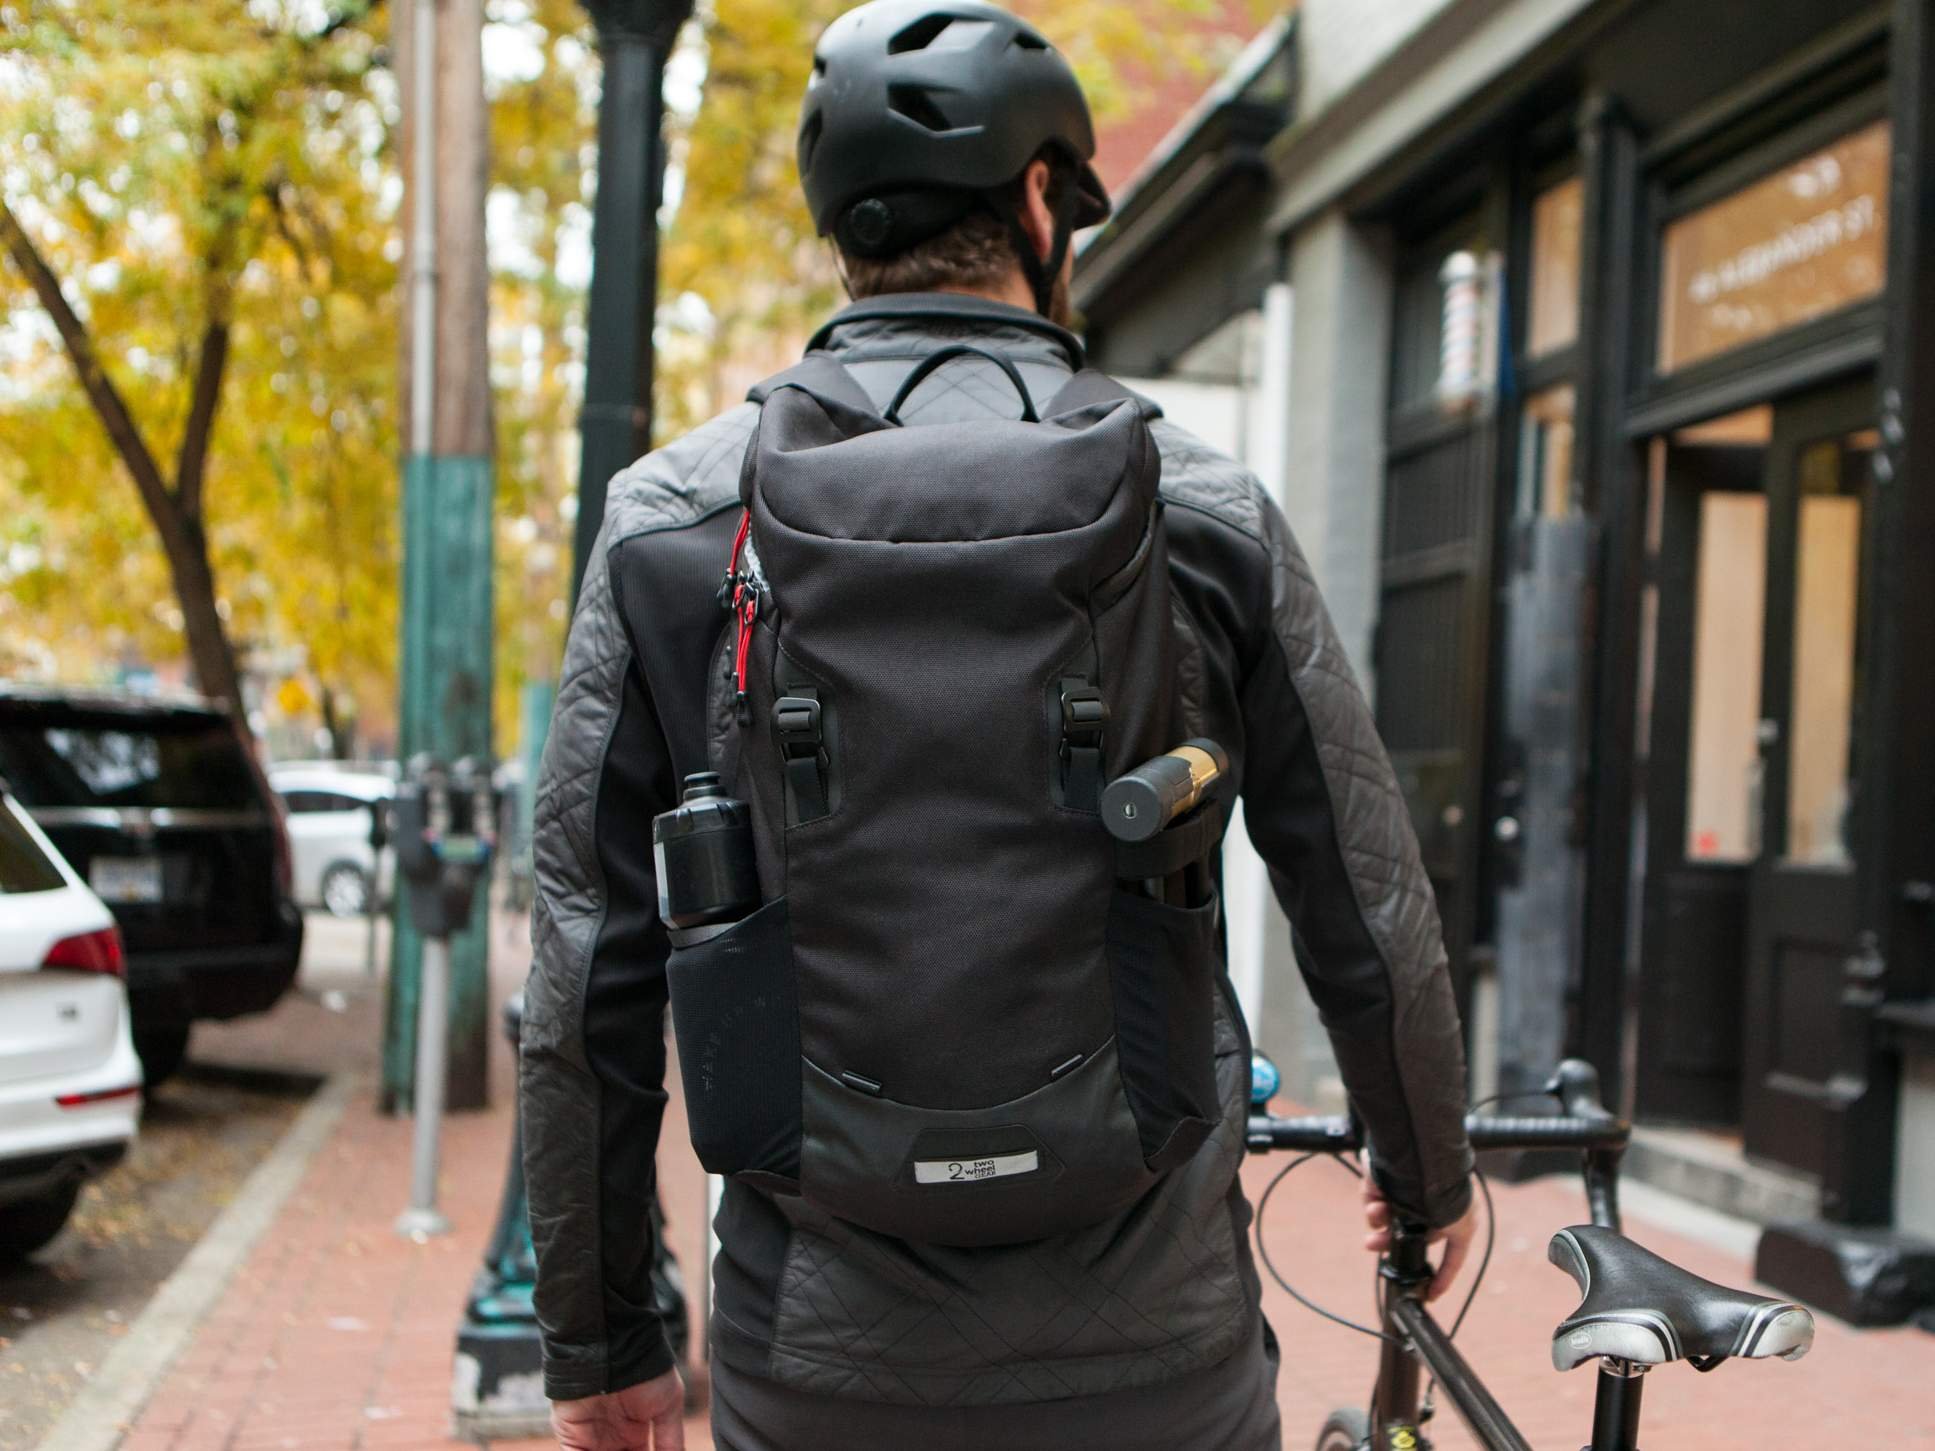 Two Wheel Gear - Commute Backpack - Black - On Bike Commuter.jpg